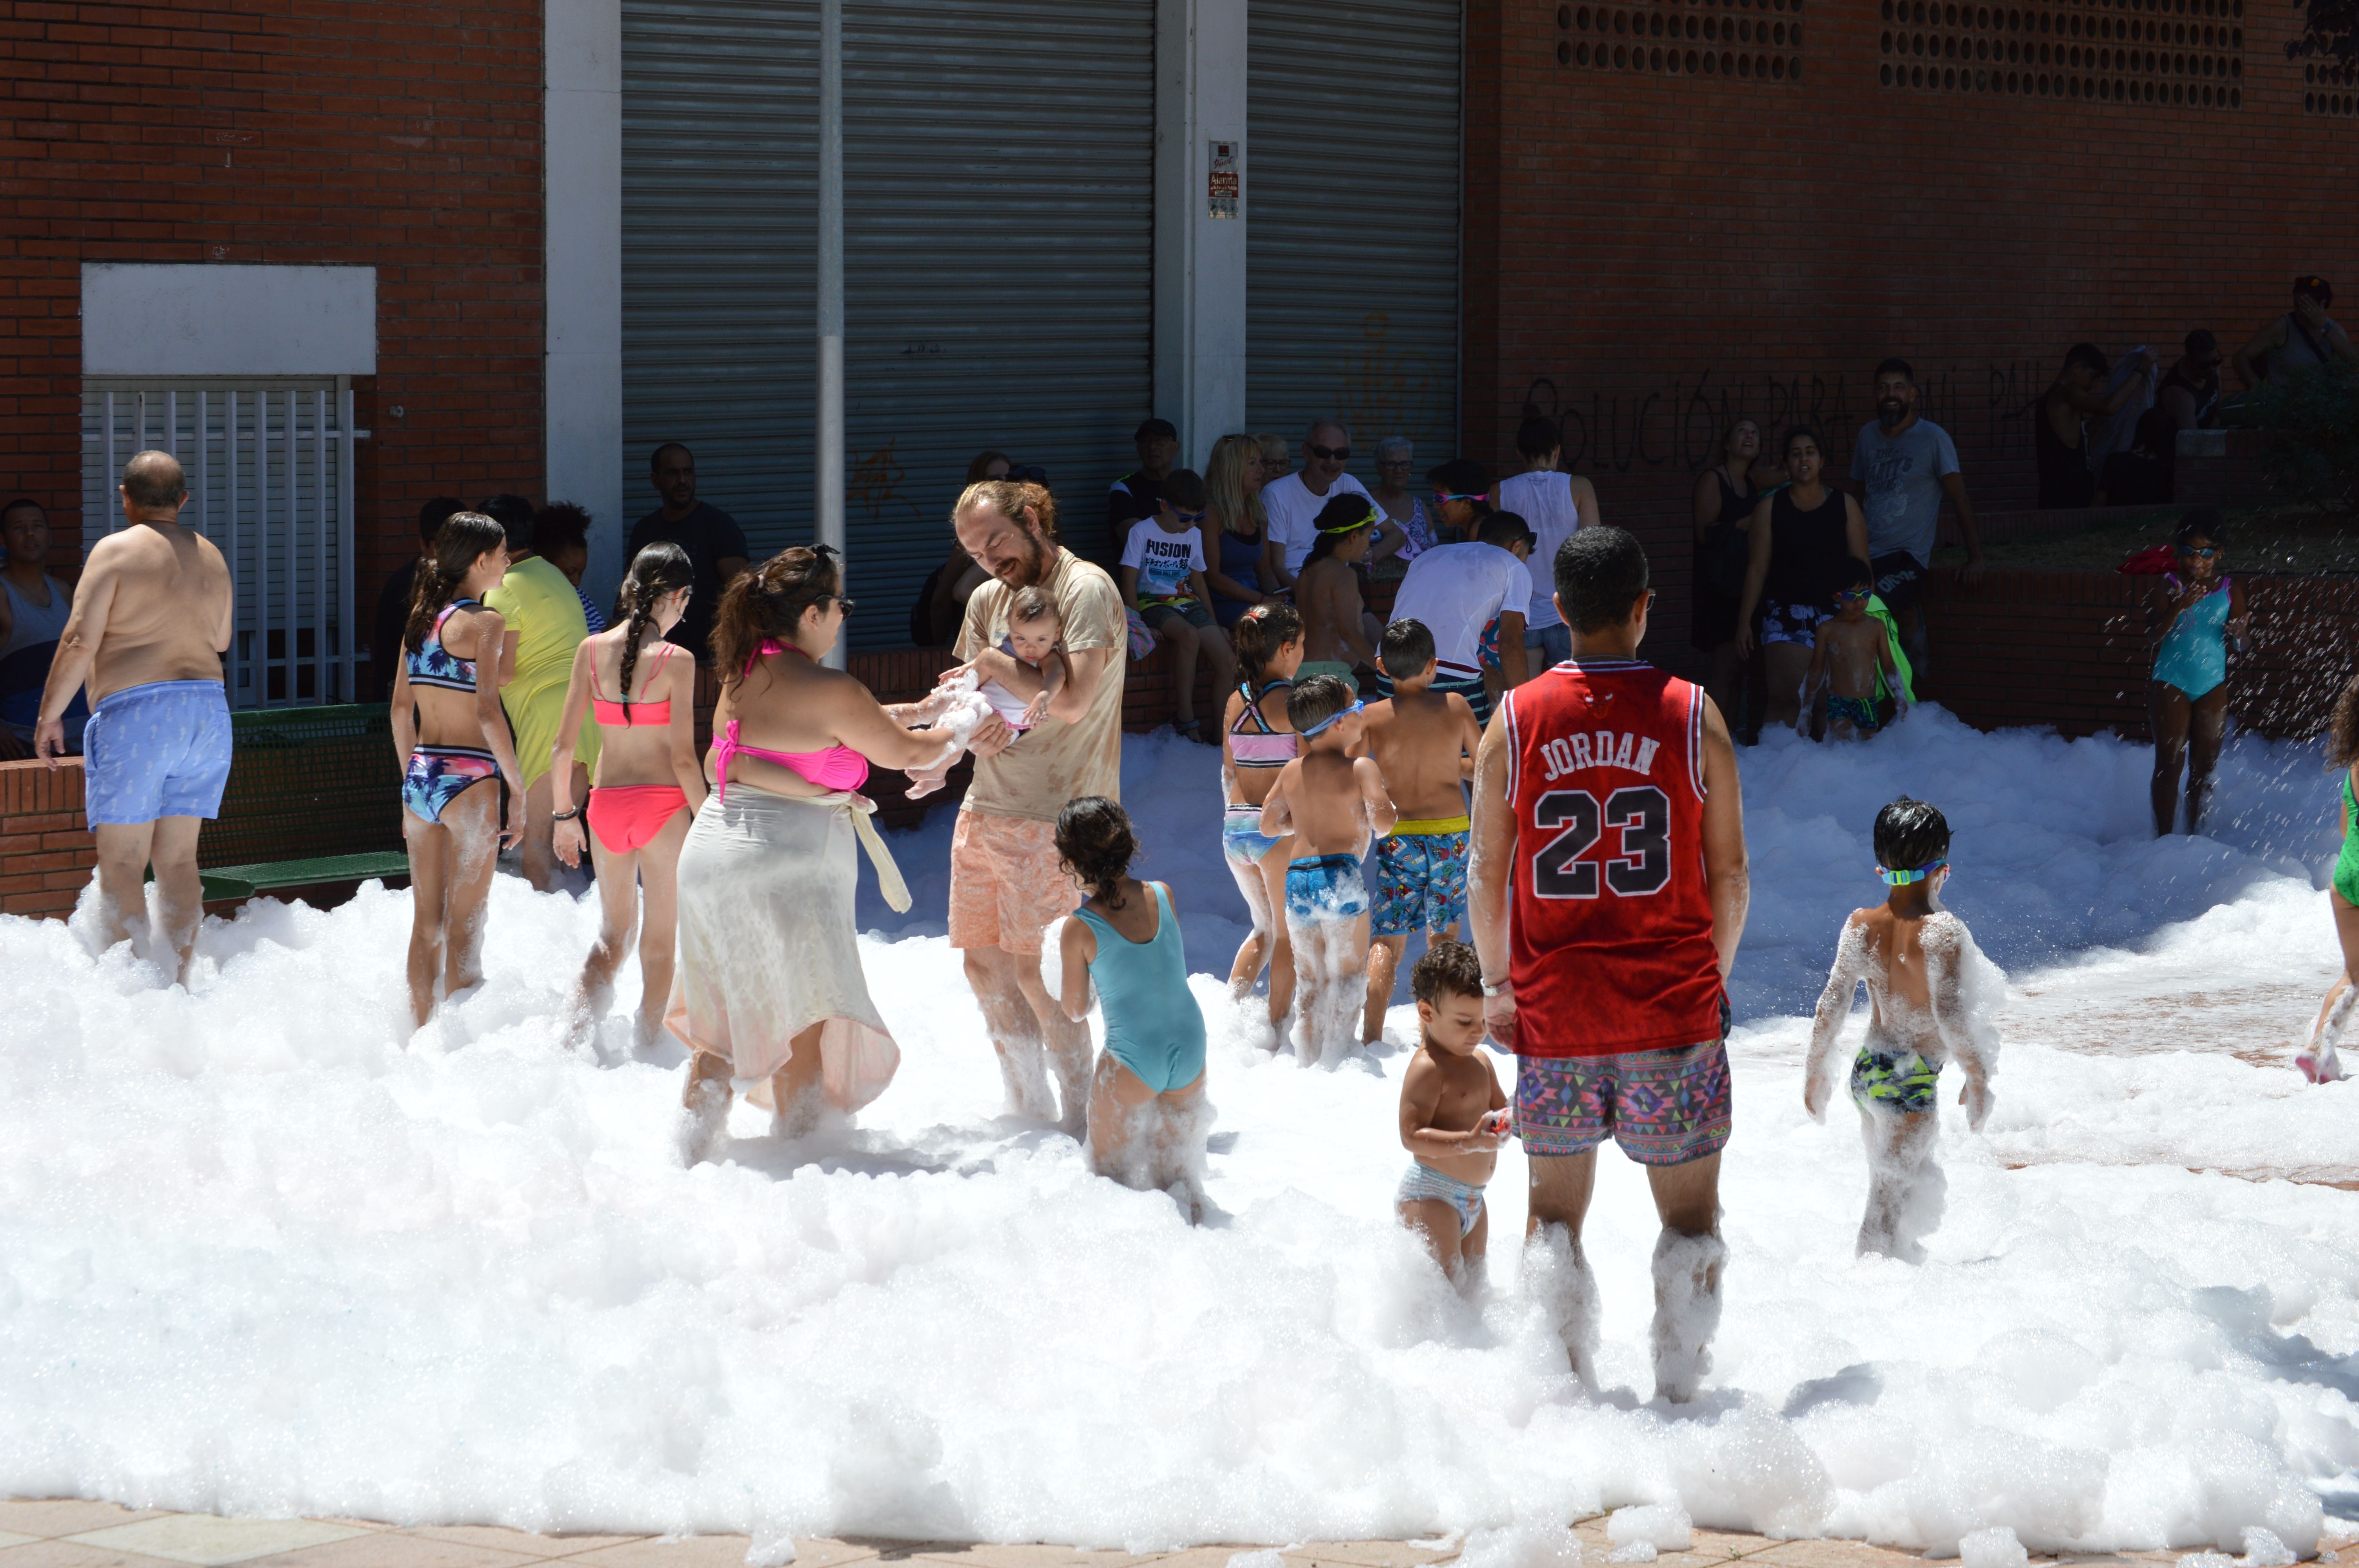 Festa de l'escuma a les festes de Can Xarau. FOTO: Nora Muñoz Otero